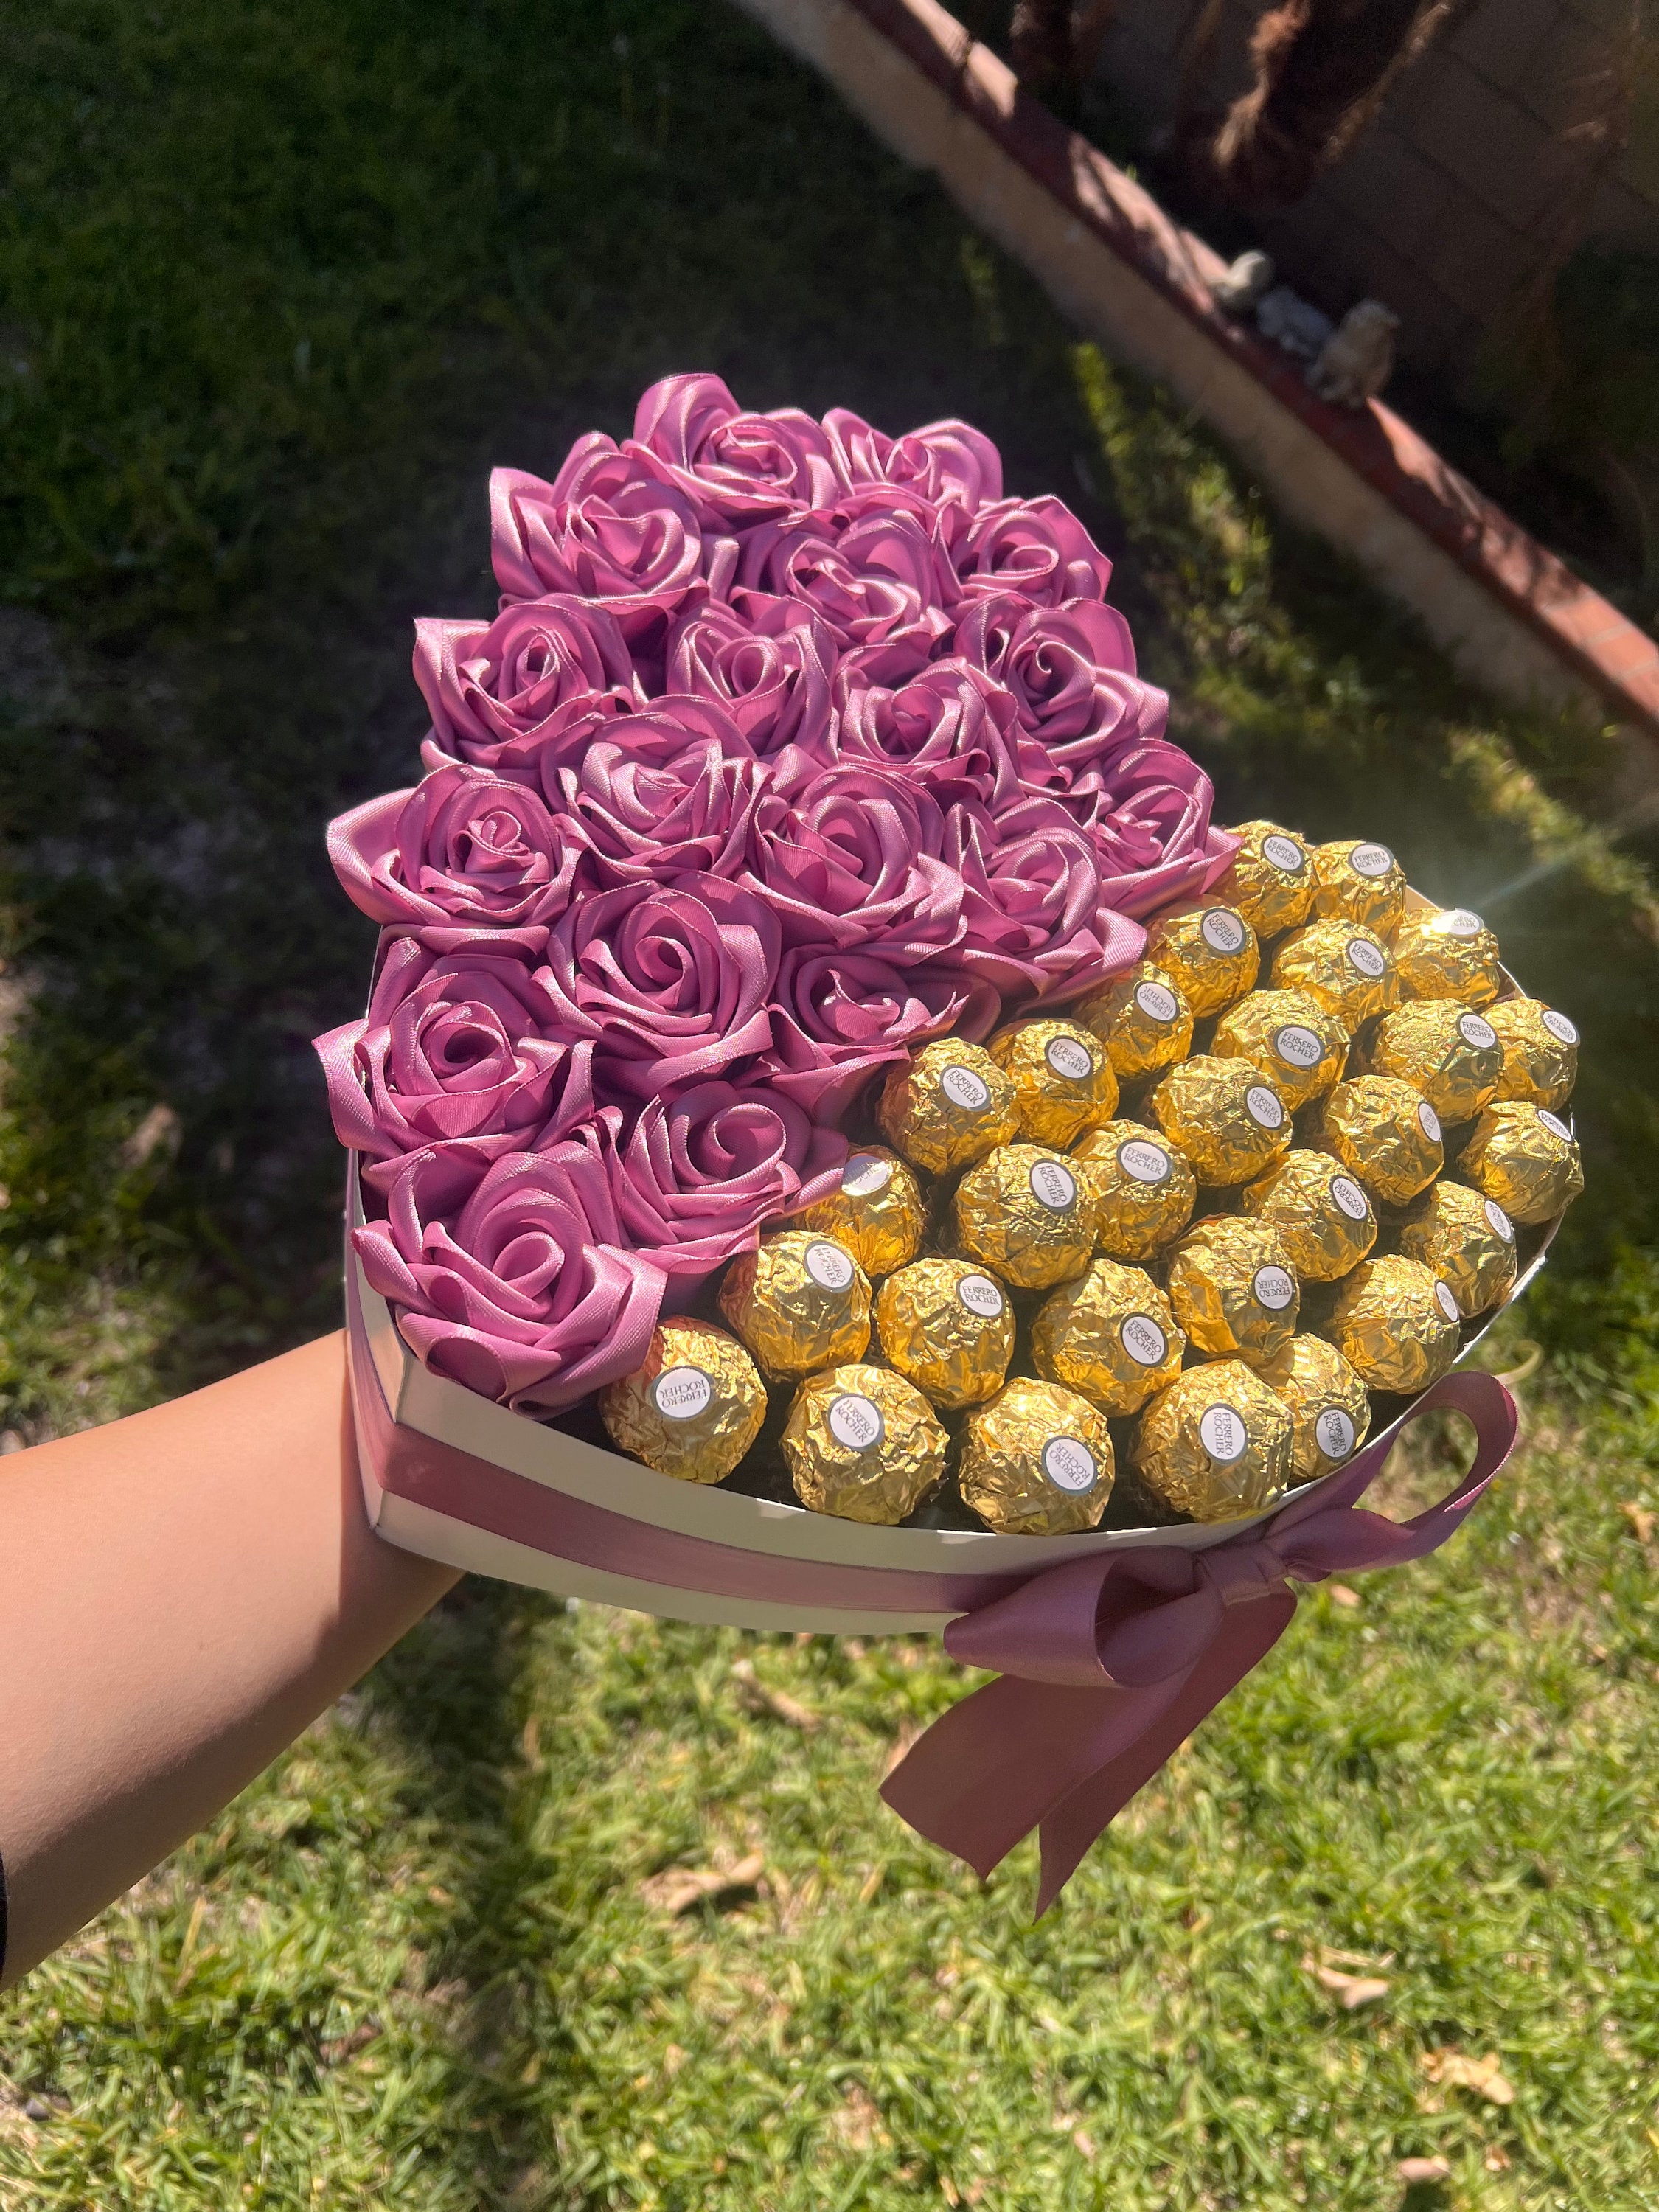 Forever Roses/rosas Eternas/flower Arrangement/bouquet/heart Shape Roses  Arrangement/ribbon Roses/mothers Day Gift/birthday Gift -  Norway